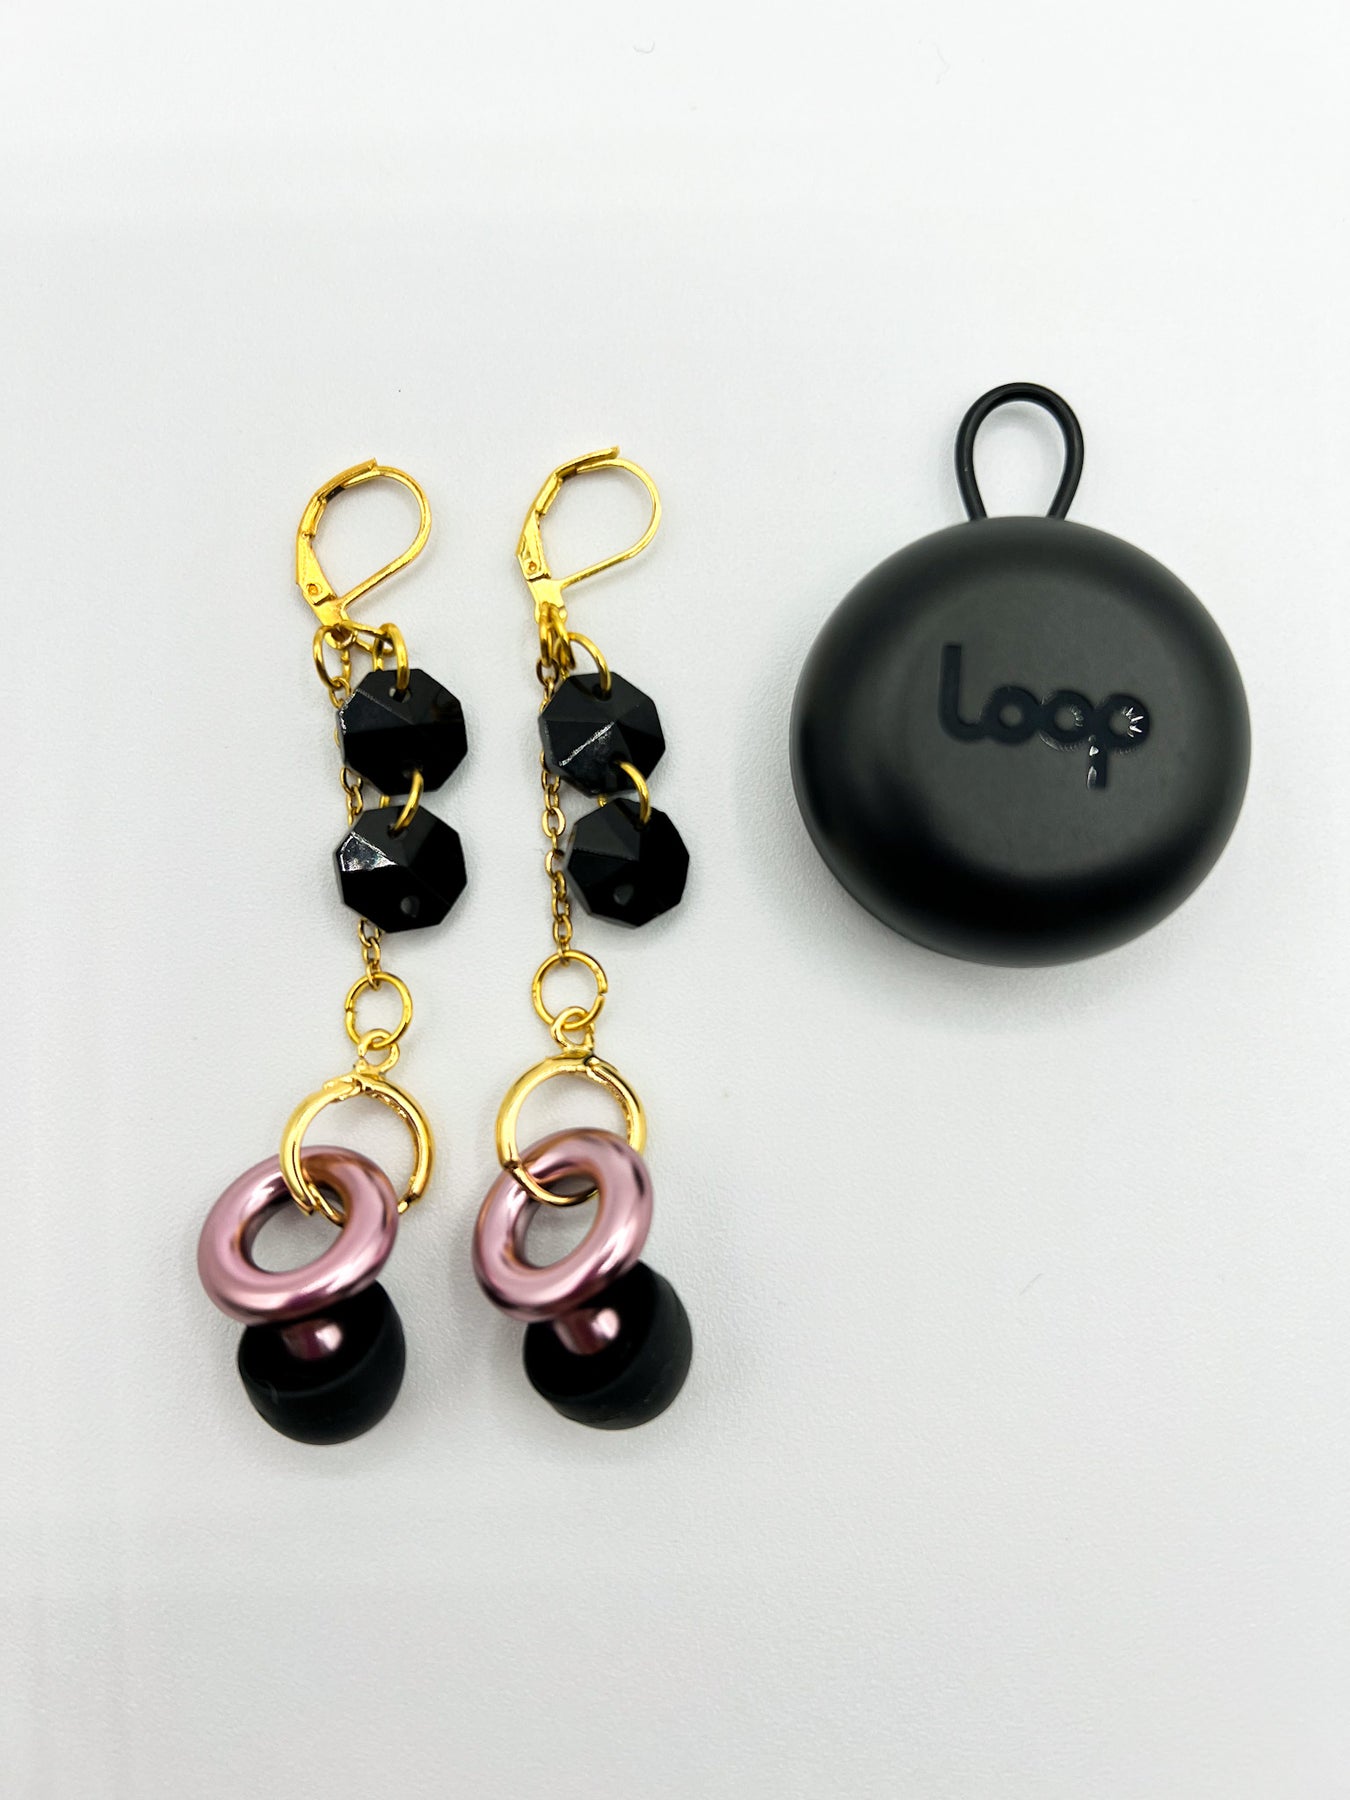 Chain Ear Cuffs for Loop Earplugs, Sensory Earrings, Earplug